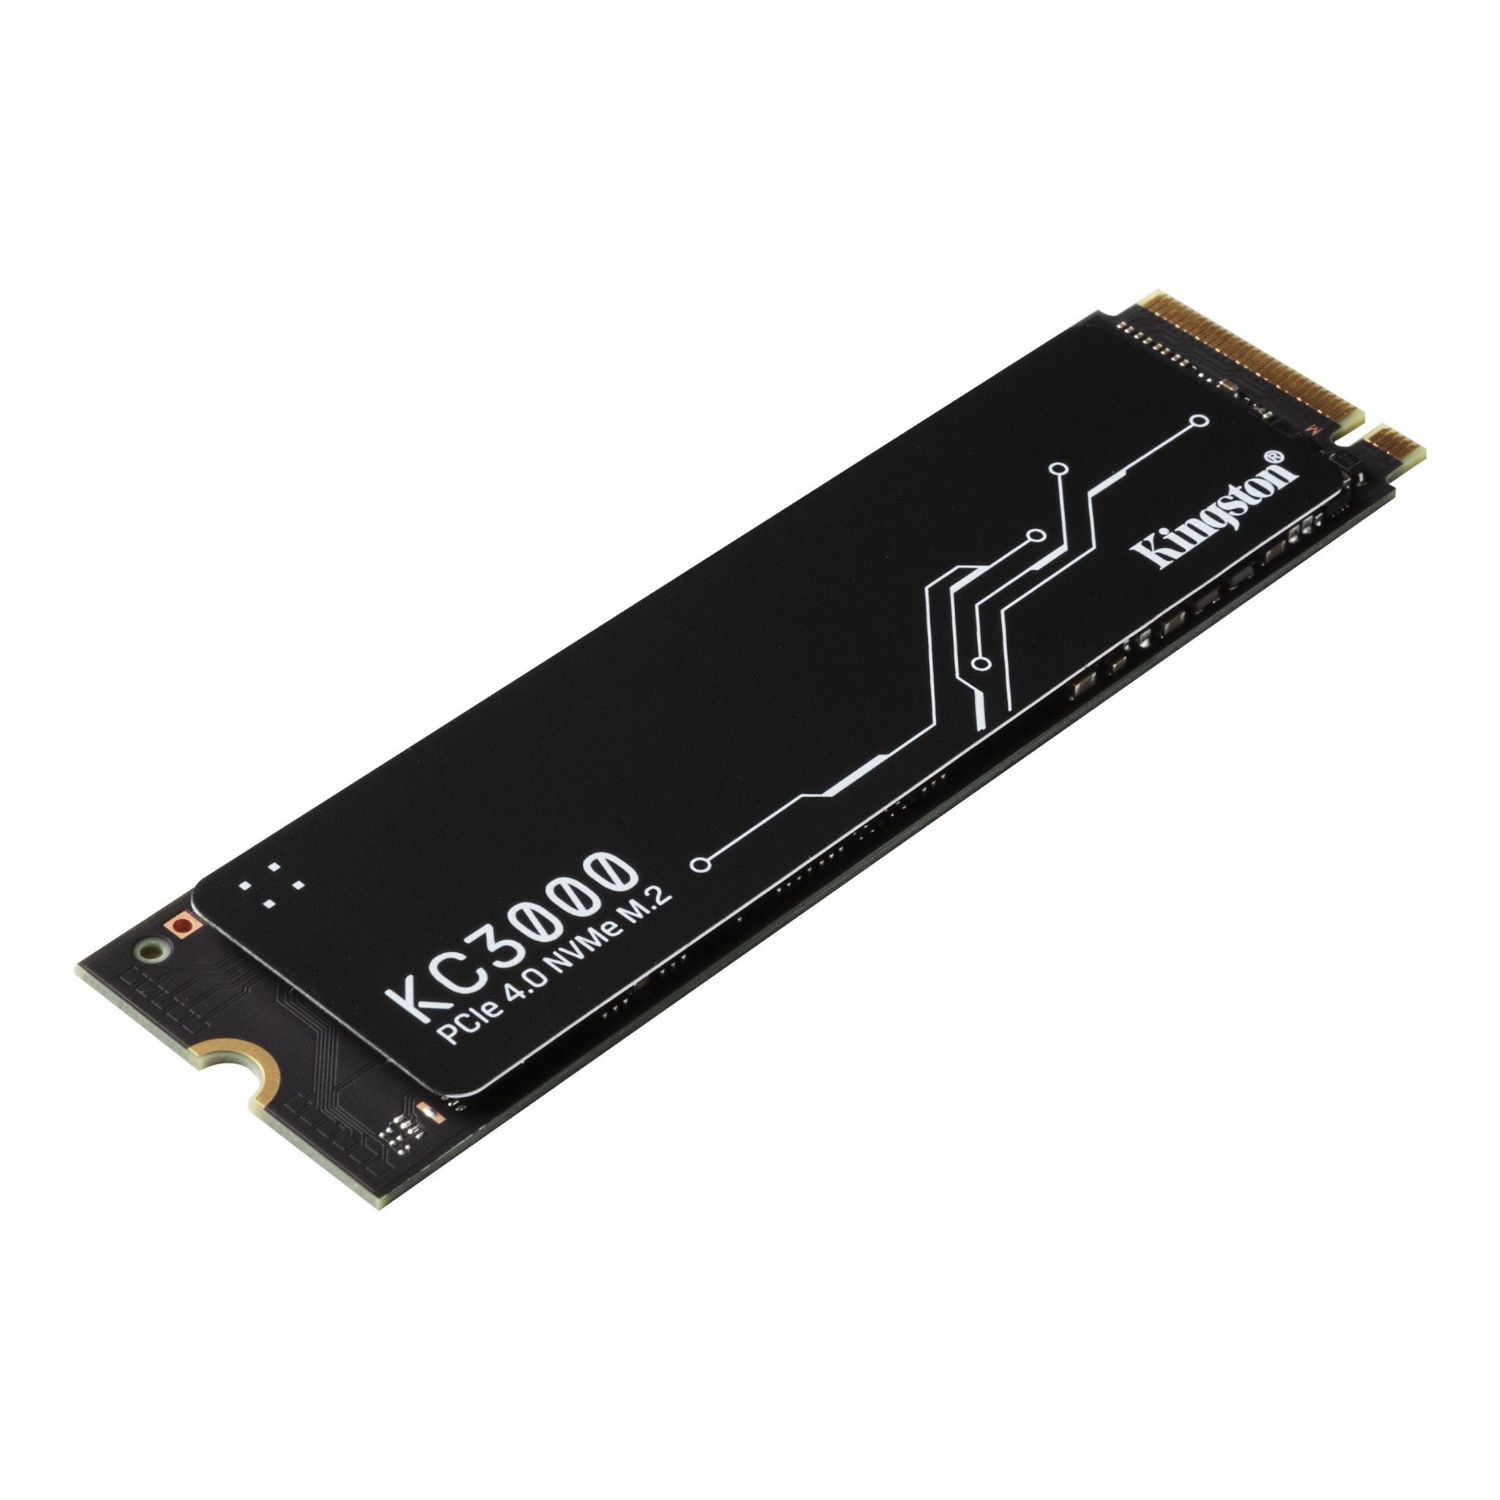 SKC3000S/512G - SSD Kingston KC3000 512Gb M.2 NVMe PCIe 4.0 3D TLC Lectura 7000Mb/s Escritura 3900Mb/s PC/Notebook con Disipador de Calor (SKC3000S/512G)